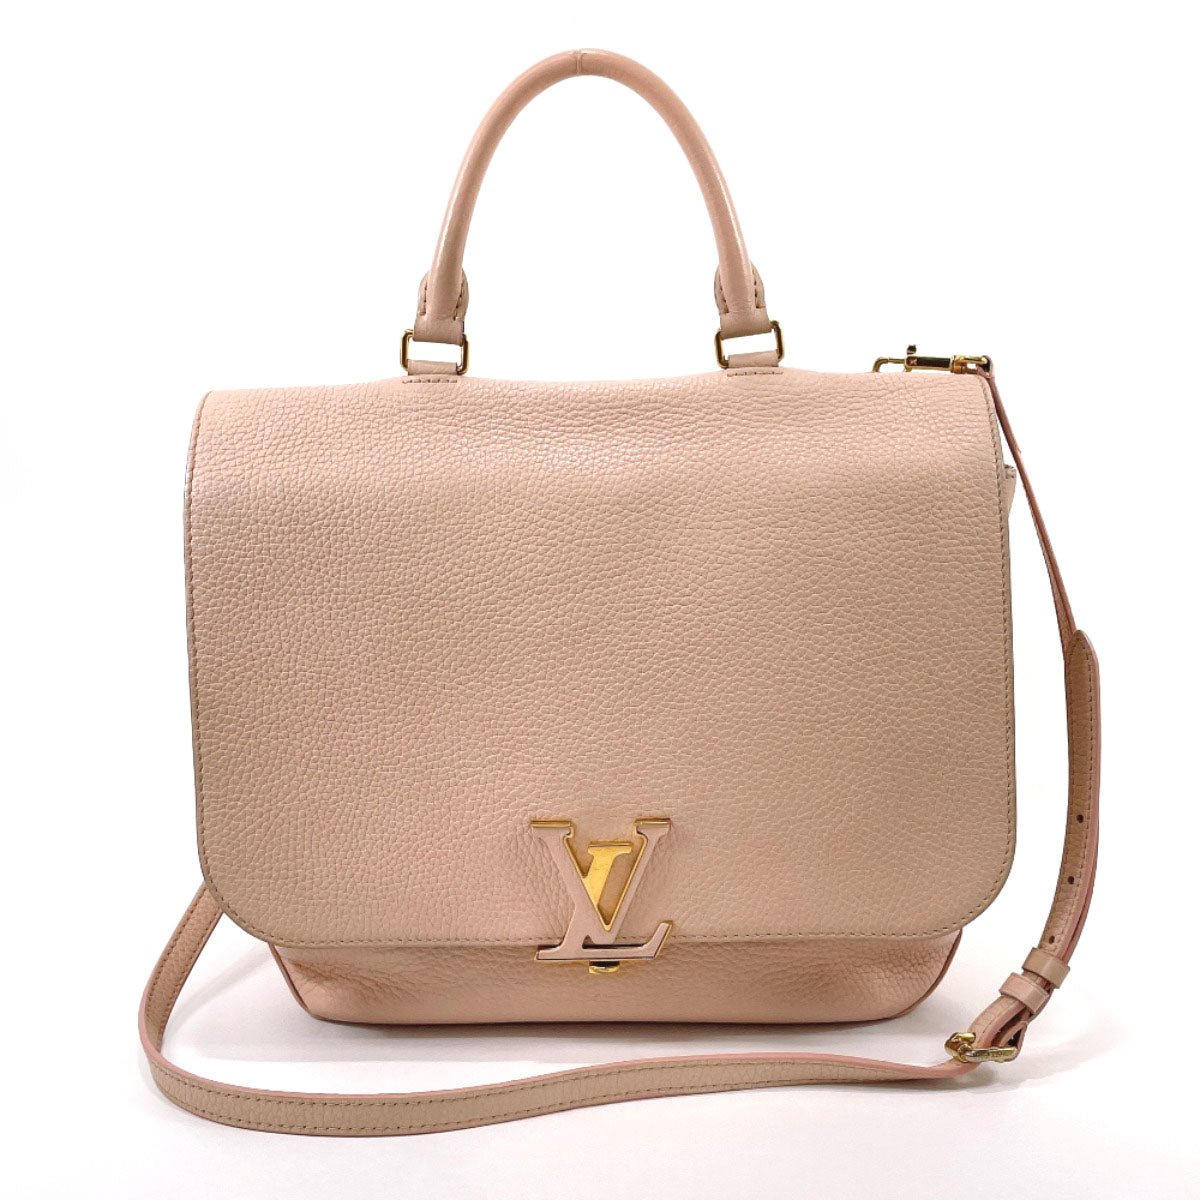 LOUIS VUITTON Black Taurillon Leather Volta Bag/ Hand bag